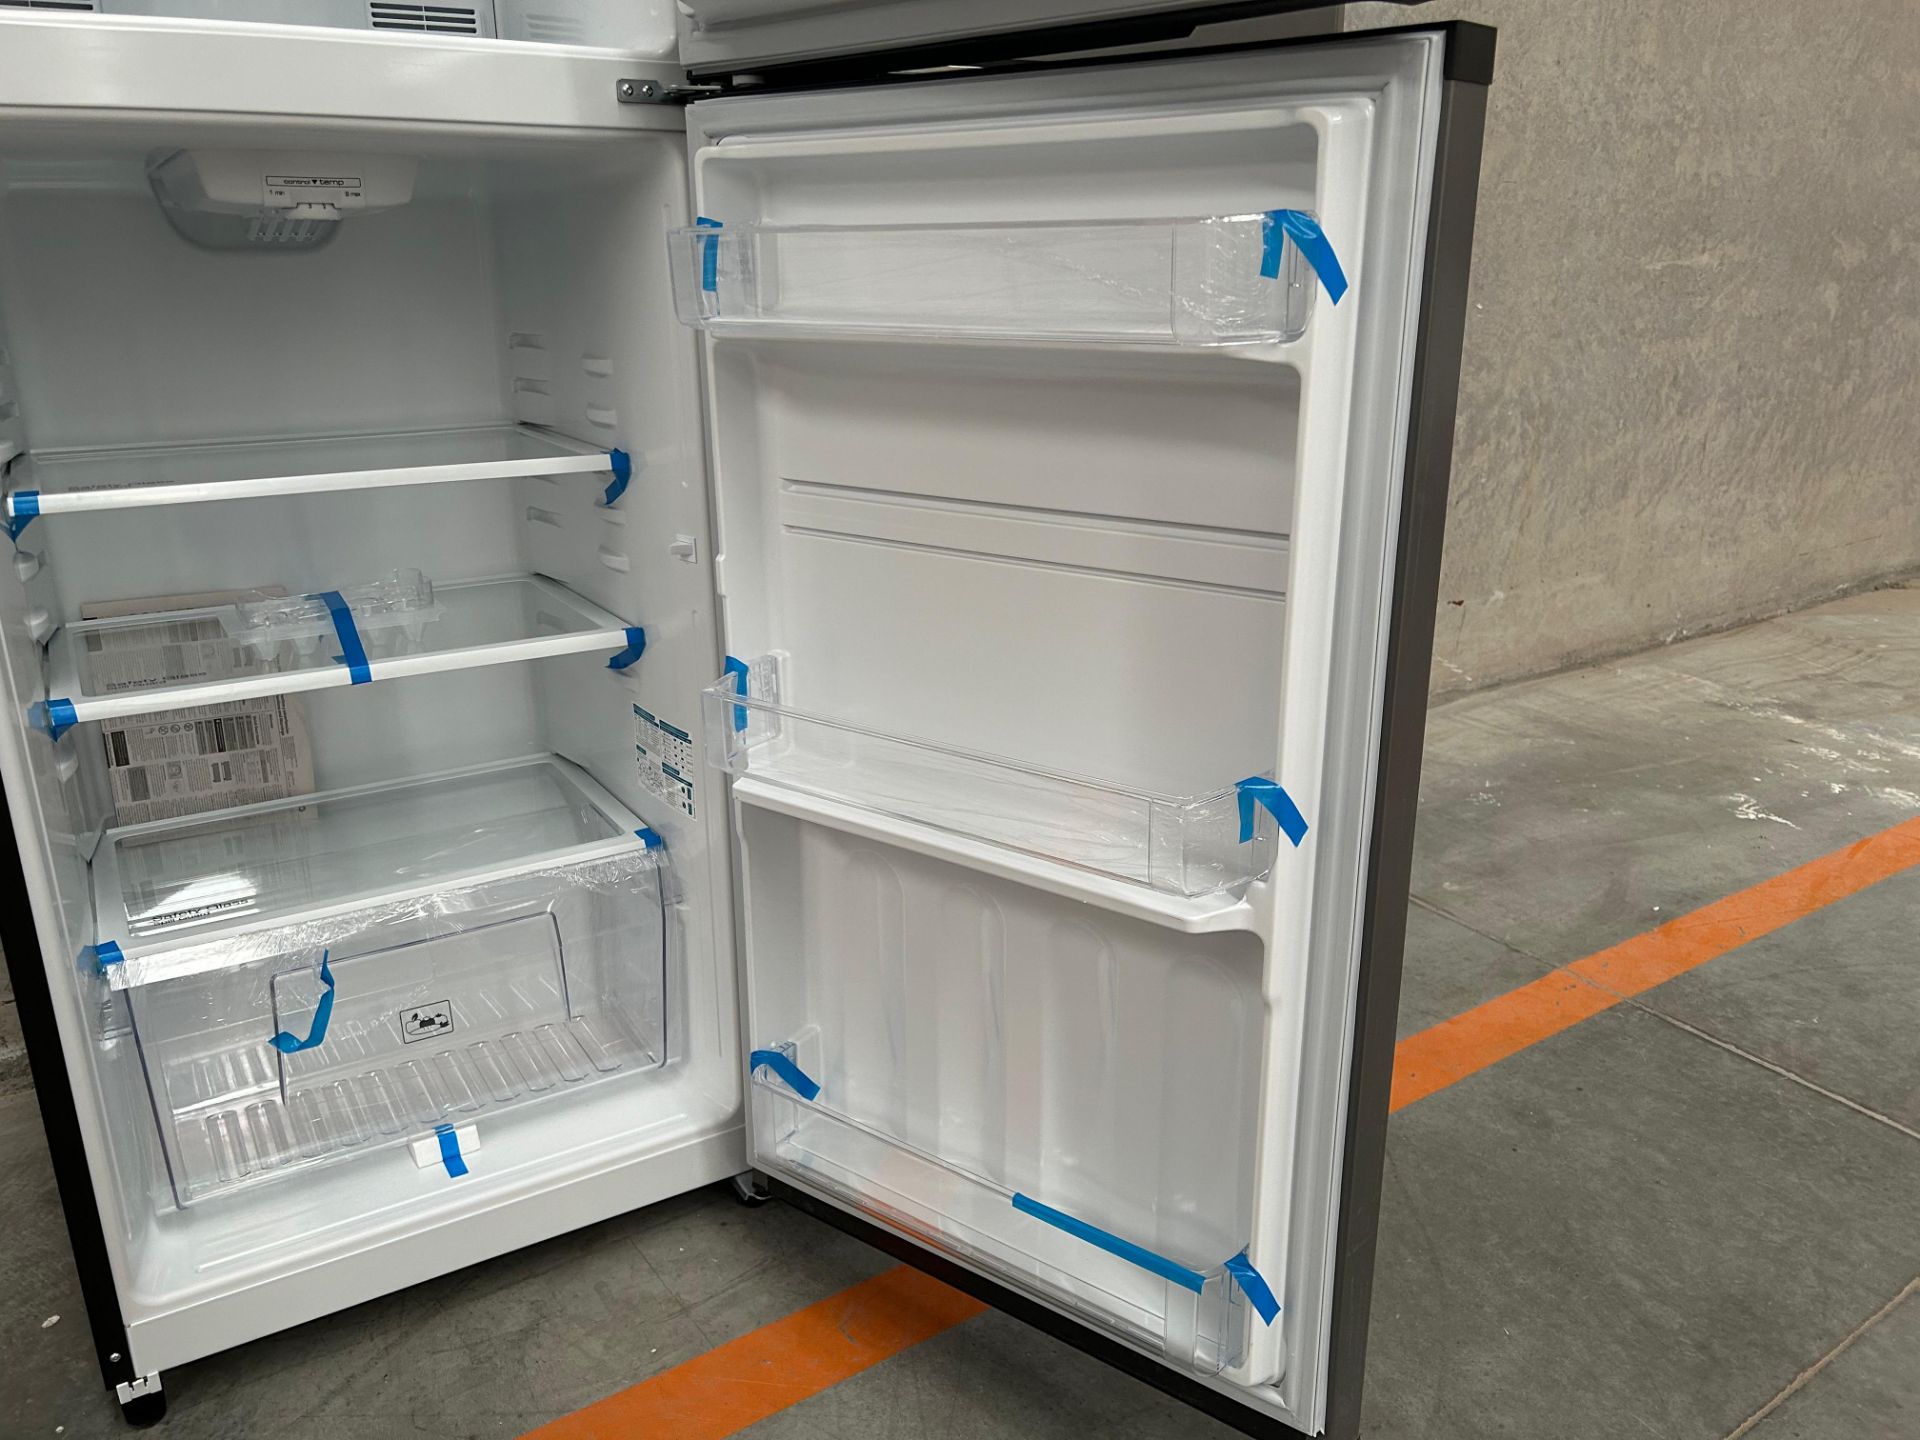 Lote de 2 Refrigeradores contiene: 1 Refrigerador Marca MABE, Modelo RME360PVMRM0, Serie 21969, Col - Image 9 of 15